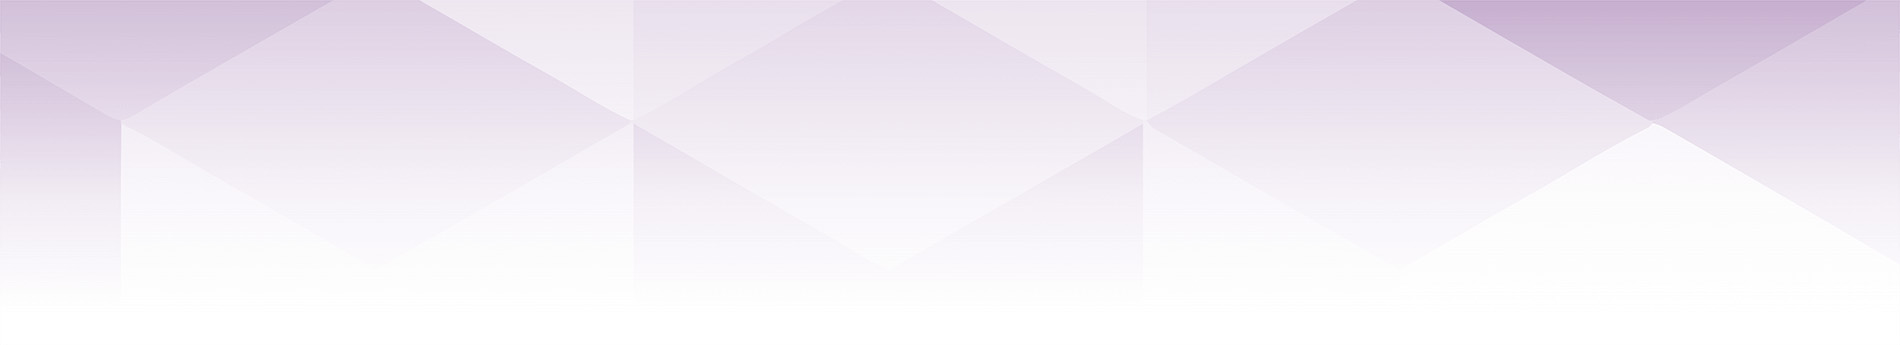 紫色六角图案